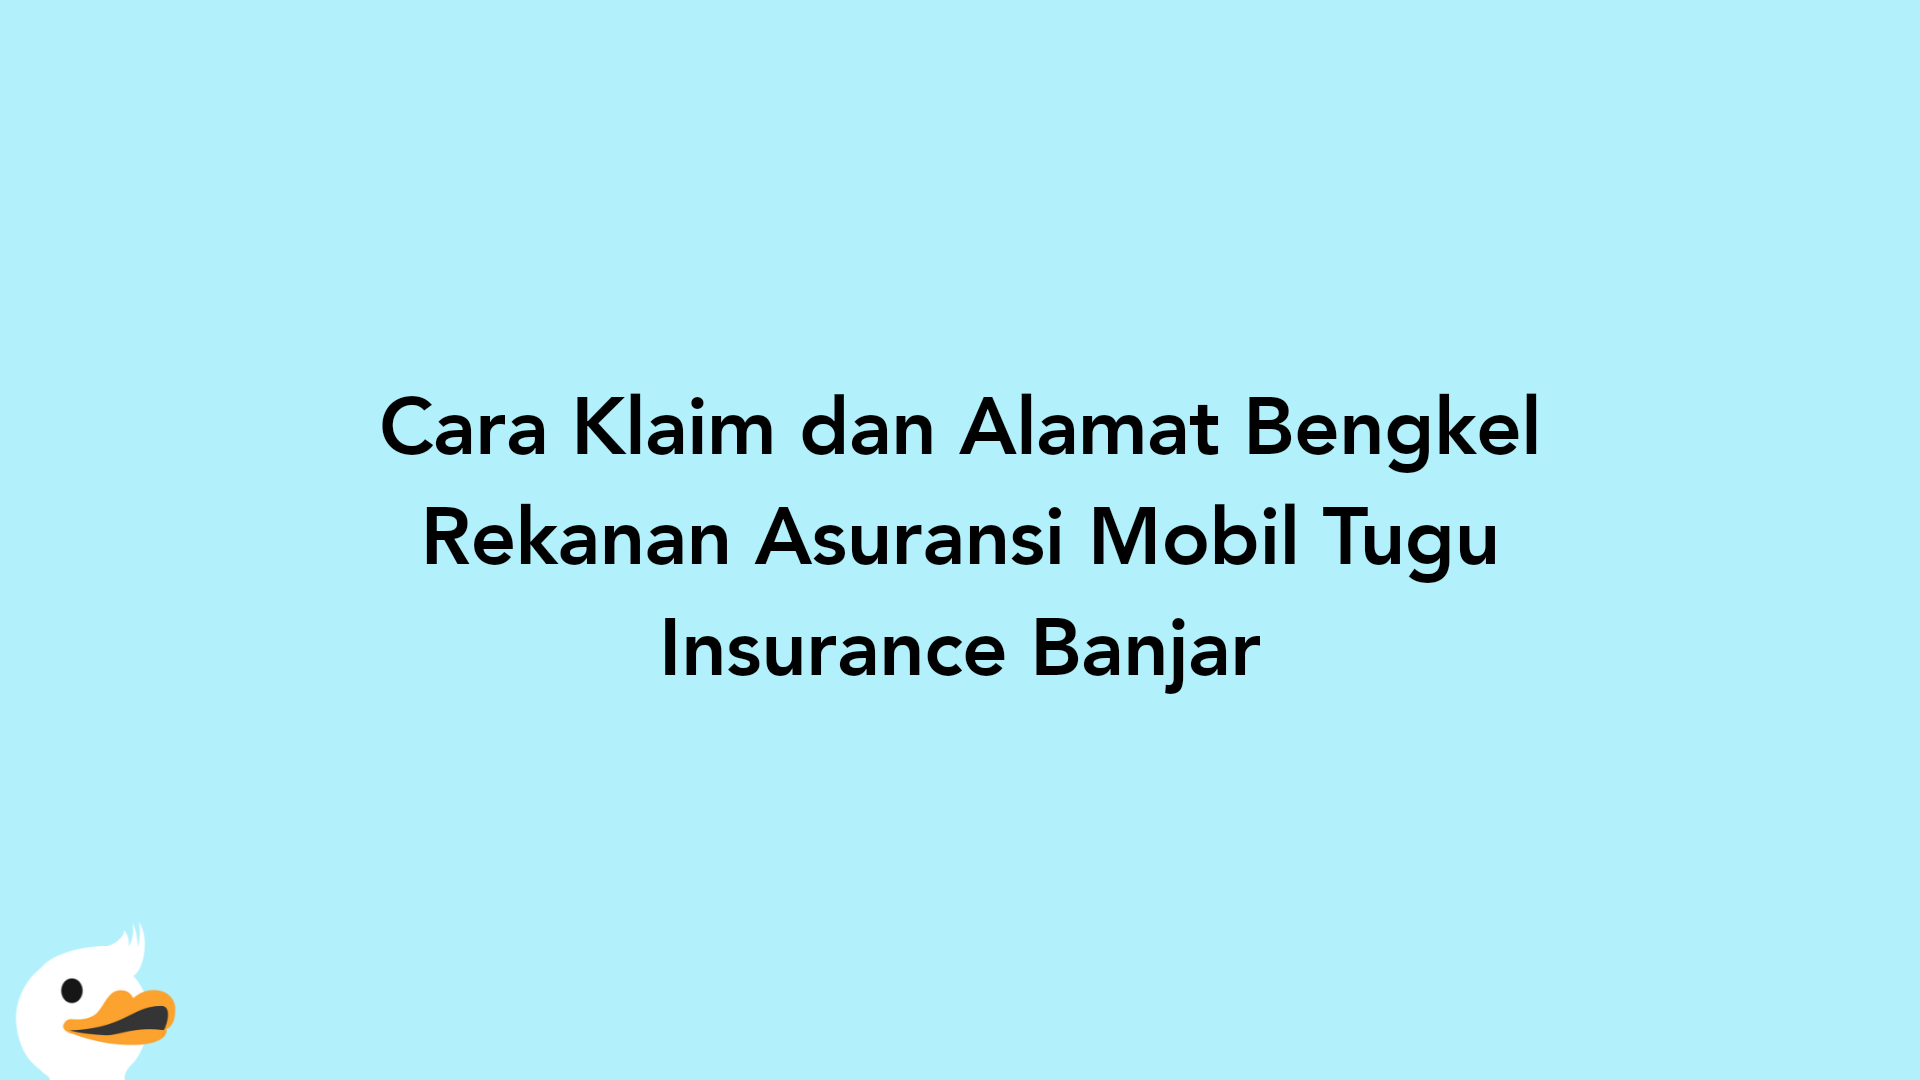 Cara Klaim dan Alamat Bengkel Rekanan Asuransi Mobil Tugu Insurance Banjar